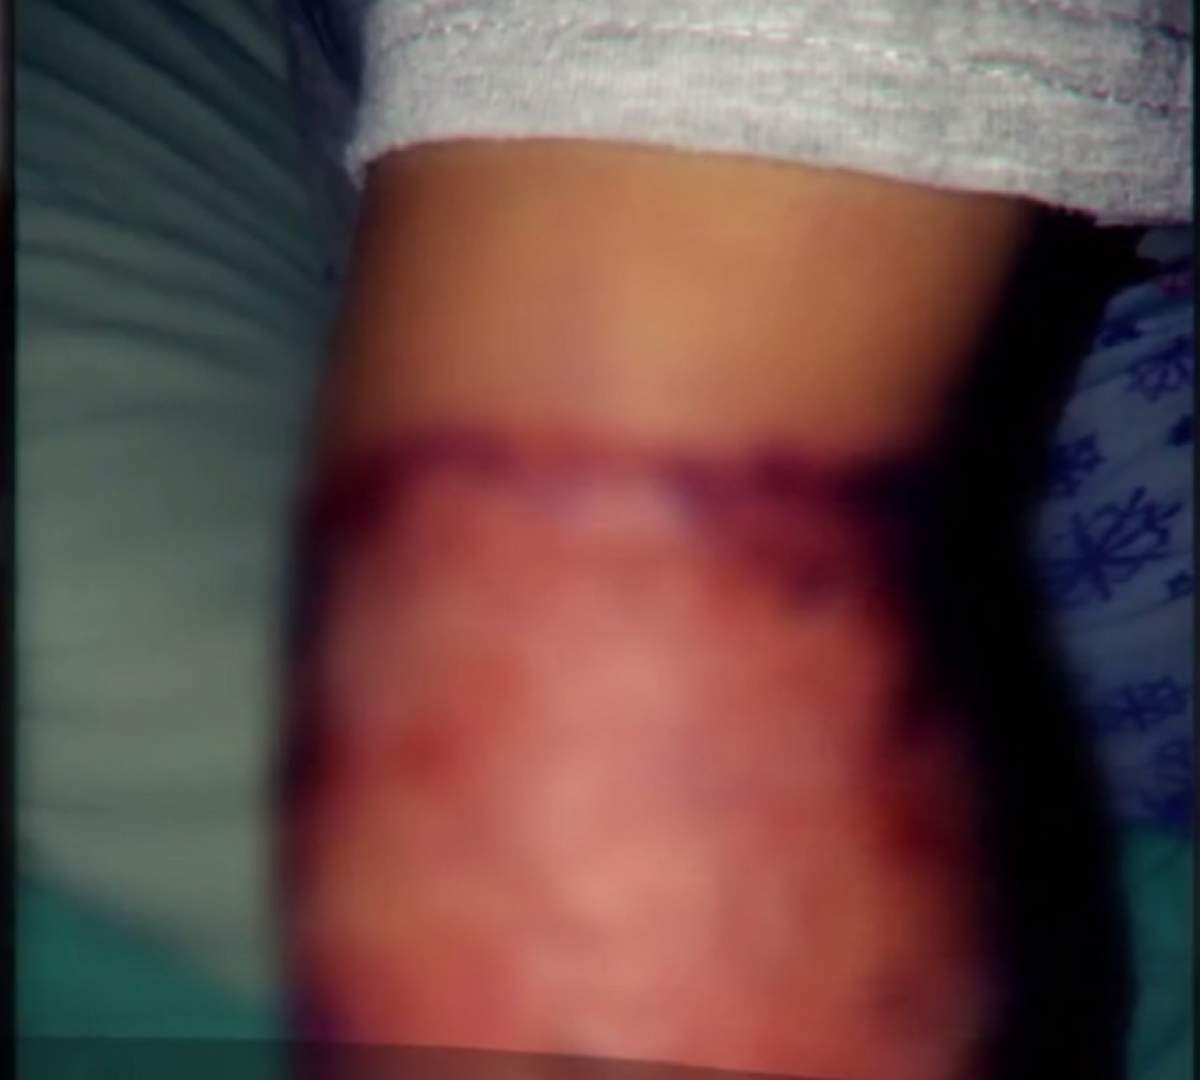 VIDEO / Copii mutilaţi într-un spital din Slatina! Părinţii au avut un şoc atunci când au dat jos leucoplastul